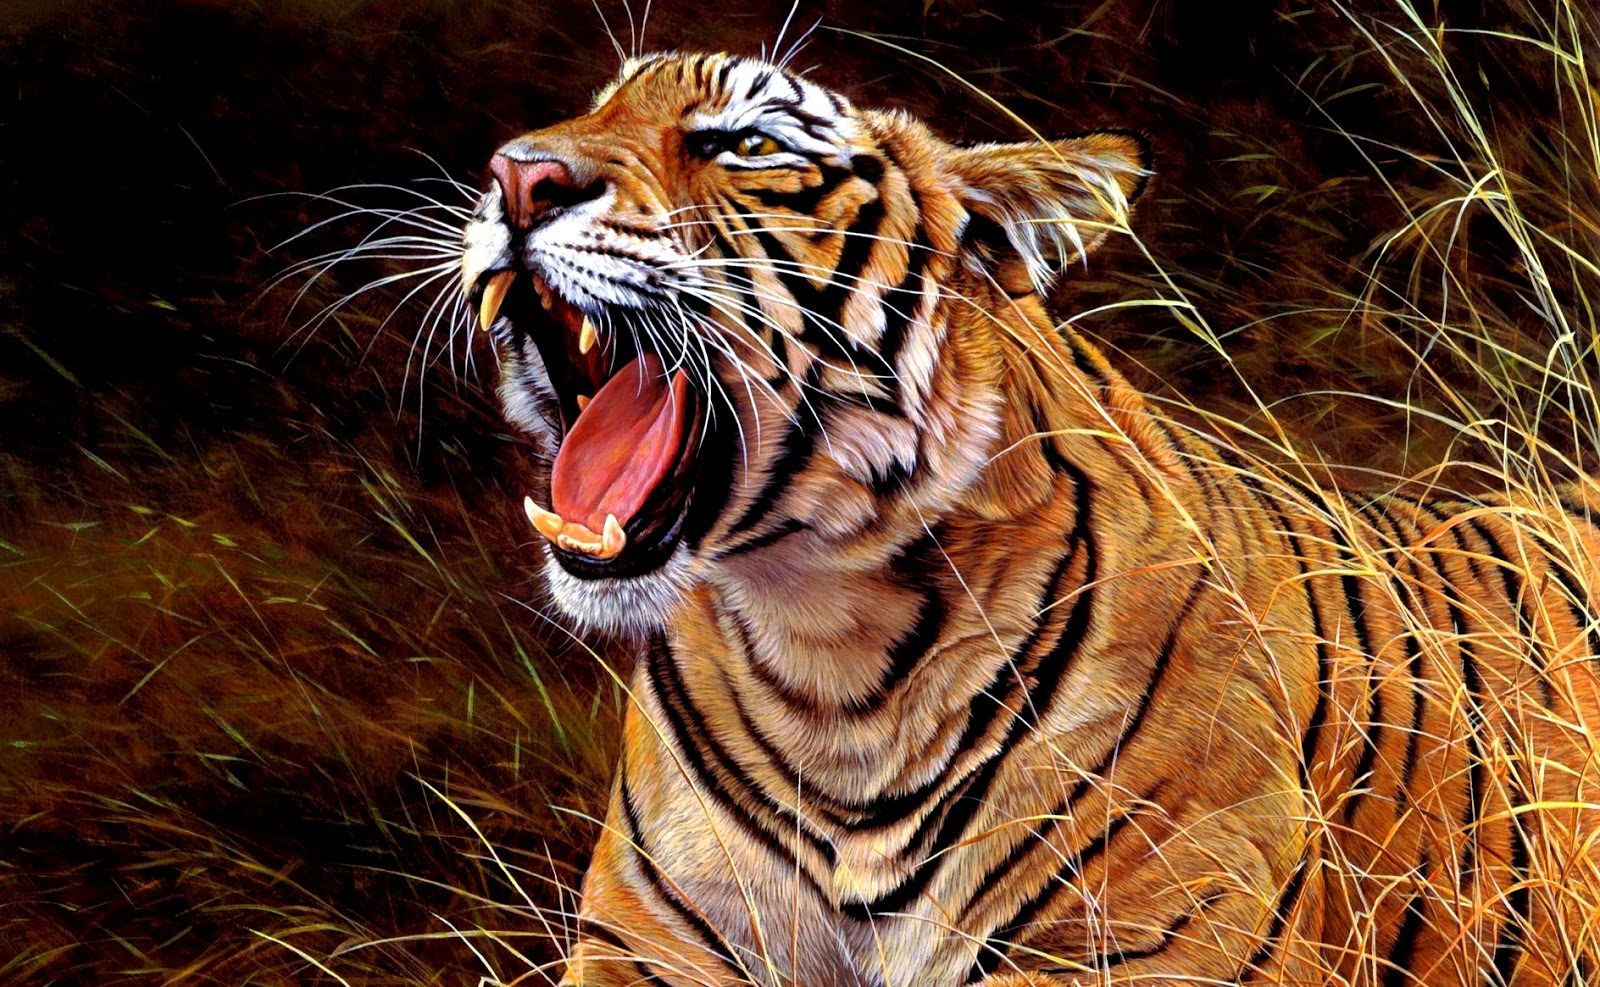  Gambar  Harimau Terbaru Kumpulan Gambar 